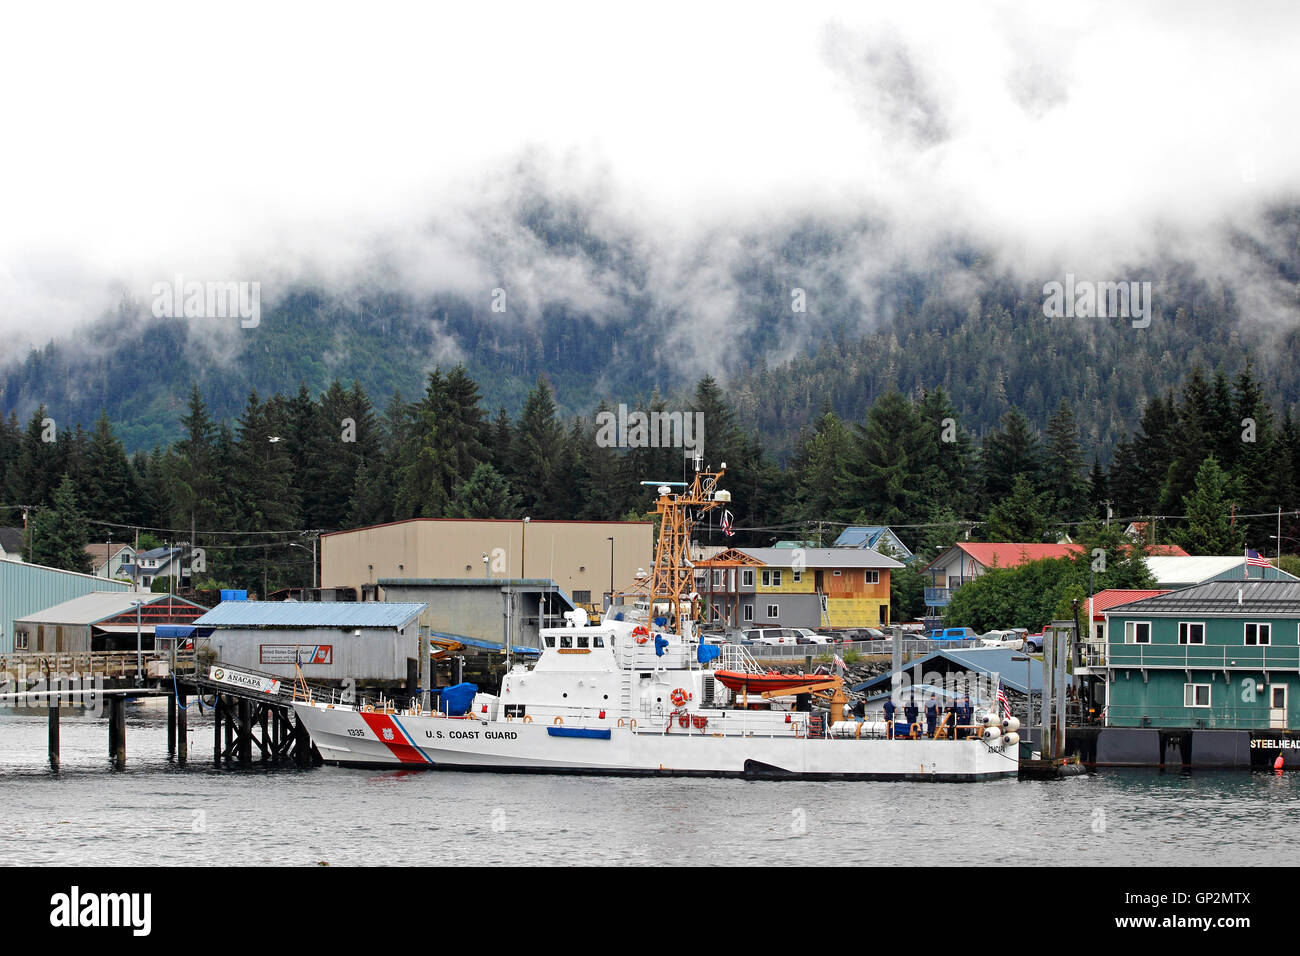 Garde-côte américain 'bateaux' Anacapa Petersburg 'petit village de pêche de la Norvège île Mitkof Le passage de l'intérieur sud-est de l'Alaska Banque D'Images